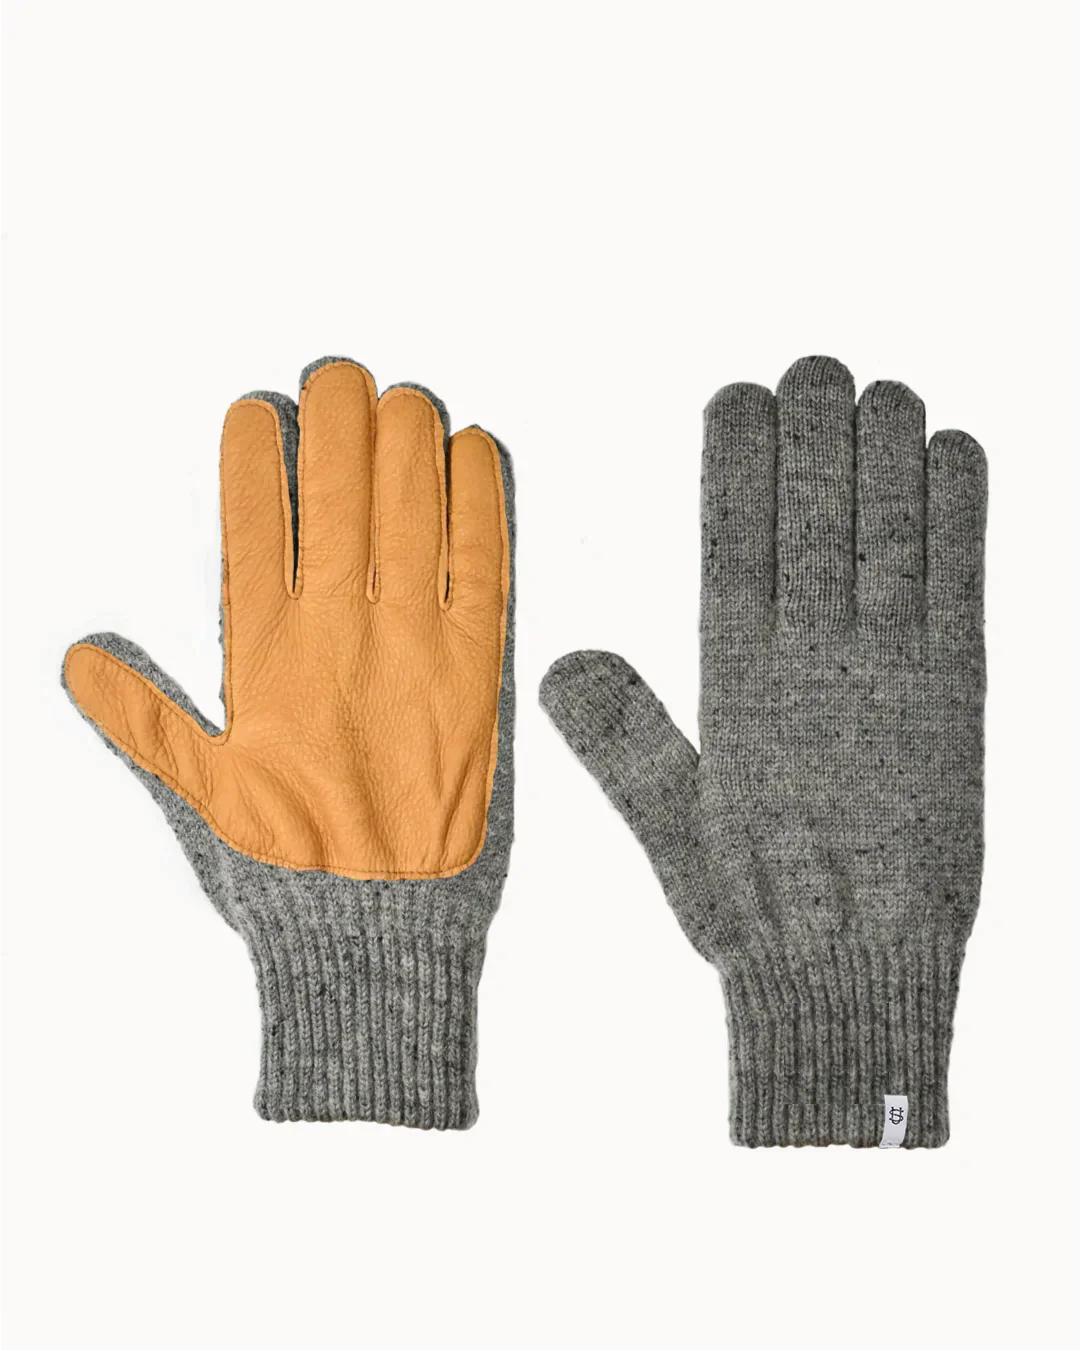 Upstate Stock Ragg Wool Full Finger W/Deerskin FW23-Men&#39;s Accessories-M-Grey Tweed-Yaletown-Vancouver-Surrey-Canada